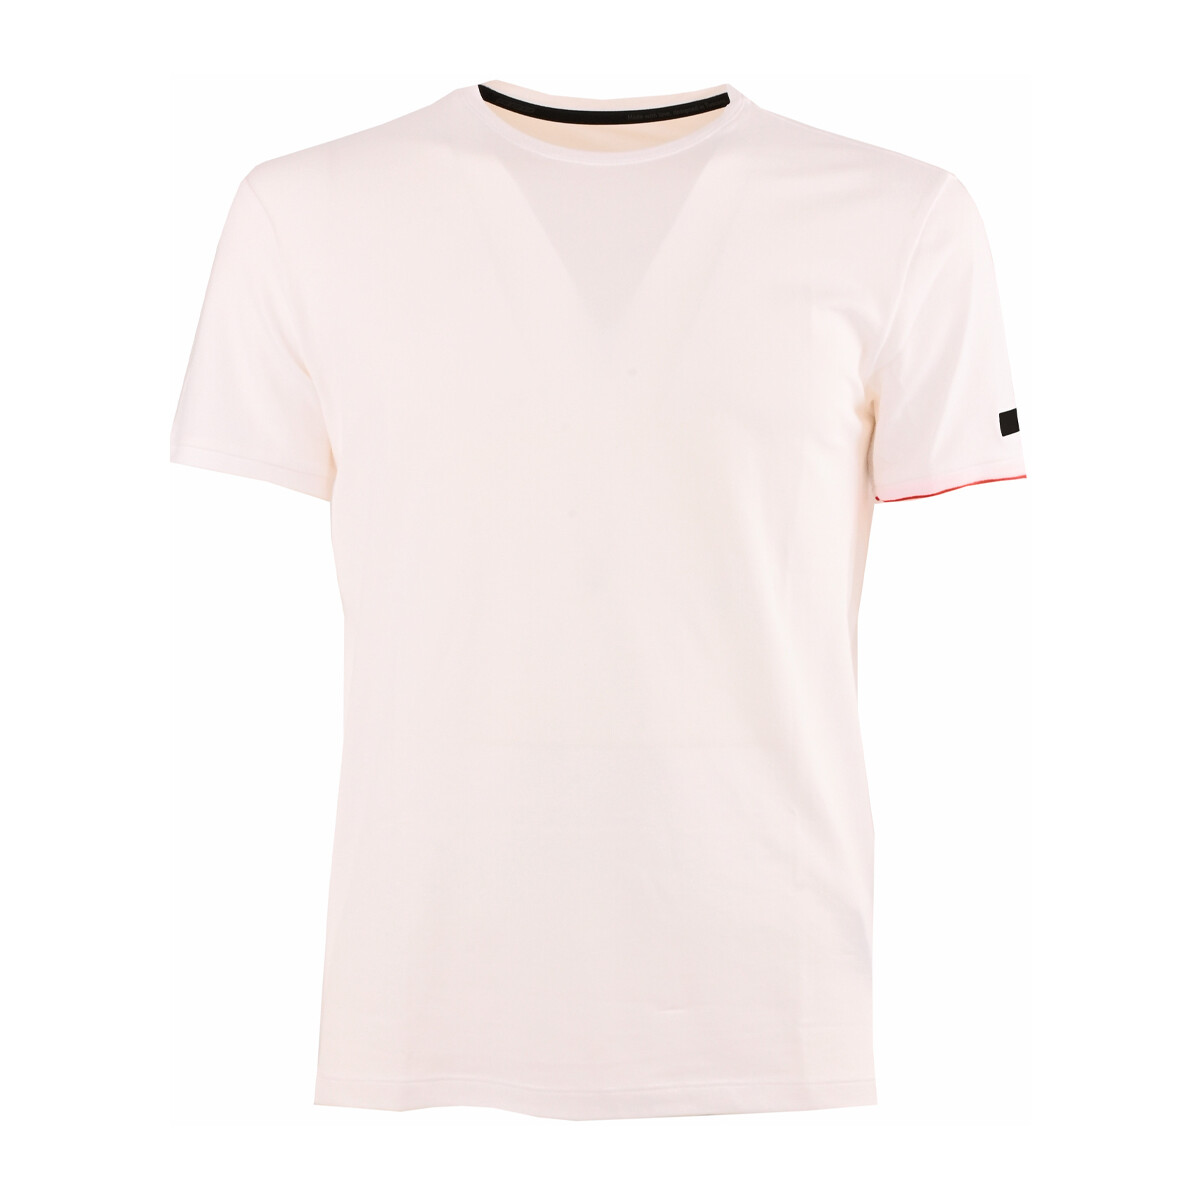 Vêtements Homme T-shirts manches courtes Rrd - Roberto Ricci Designs 23138-09 Blanc